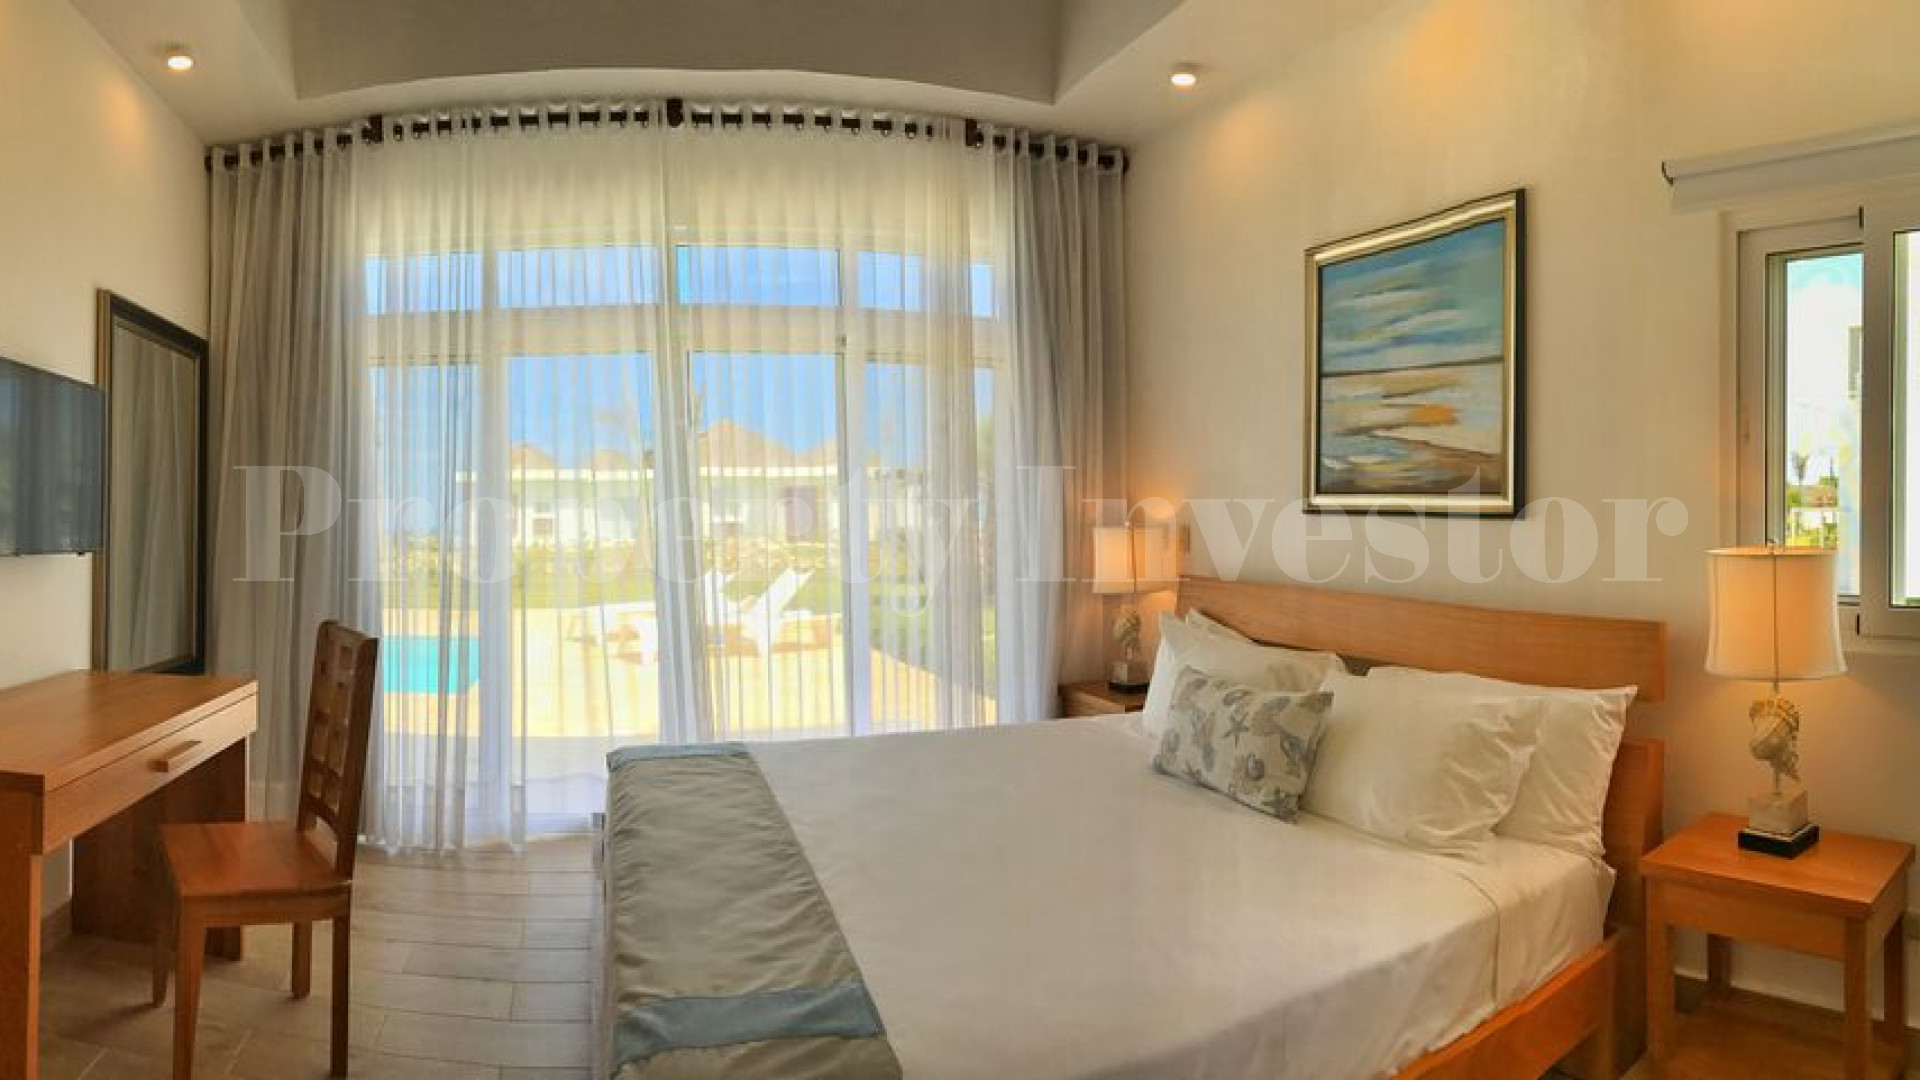 Вилла с 3 спальнями с видом на море в Доминиканской Республике с финансированием на 30 лет (Вилла 20)